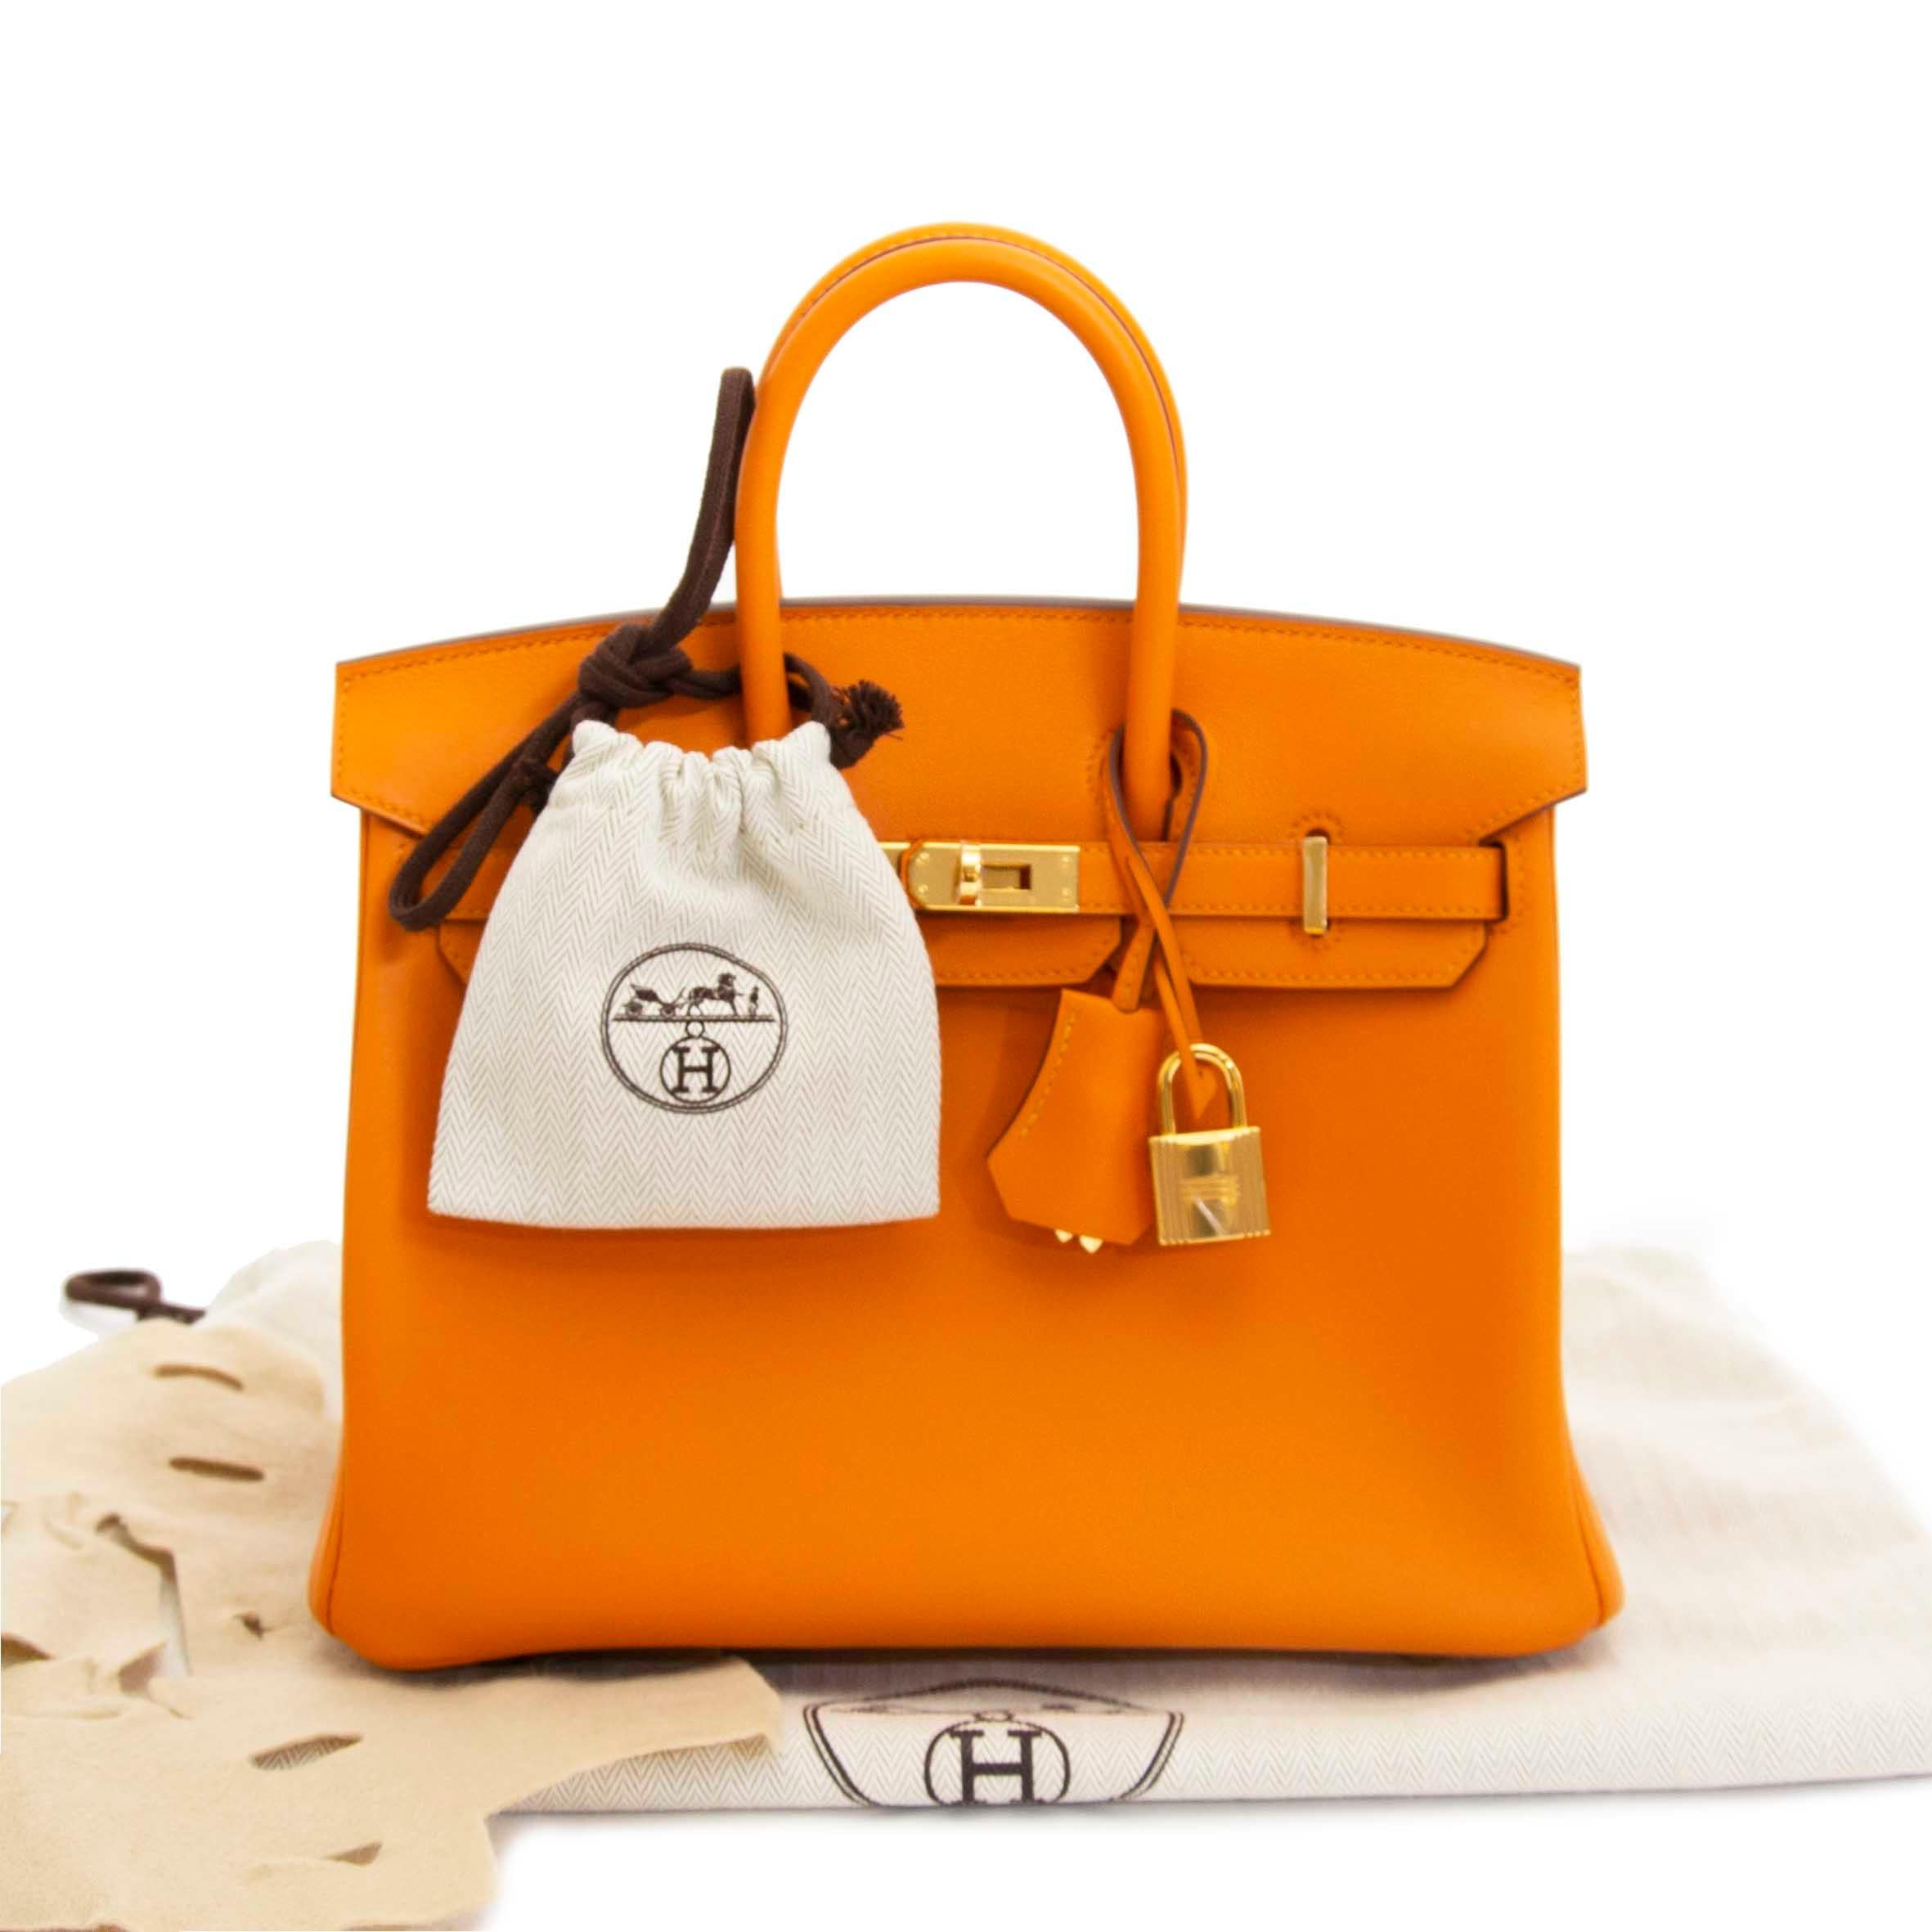 Hermès Birkin 25 Apricot Swift GHW

Diese farbenfrohe Hermès Birkin in der begehrten Größe 25 kommt in einem wunderschönen Apricot-Orange-Ton. 
Die Wunderbarkeit des Leders wird durch goldfarbene Hardware ergänzt. 

Swift-Leder fühlt sich weich an